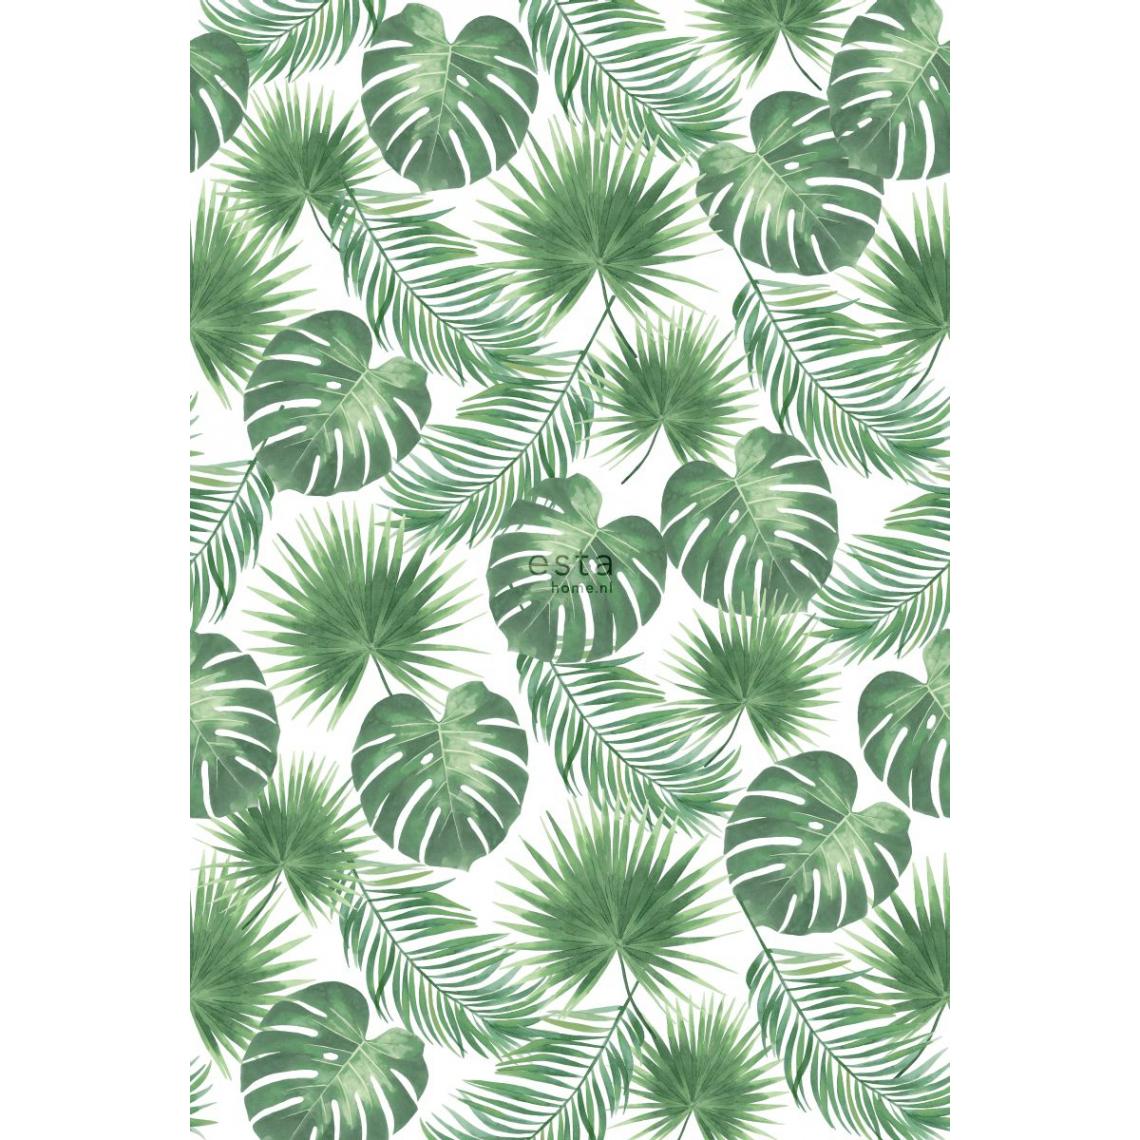 ESTAhome - ESTAhome papier peint panoramique feuilles tropicales vert - 158897 - 1.86 x 2.79 m - Papier peint